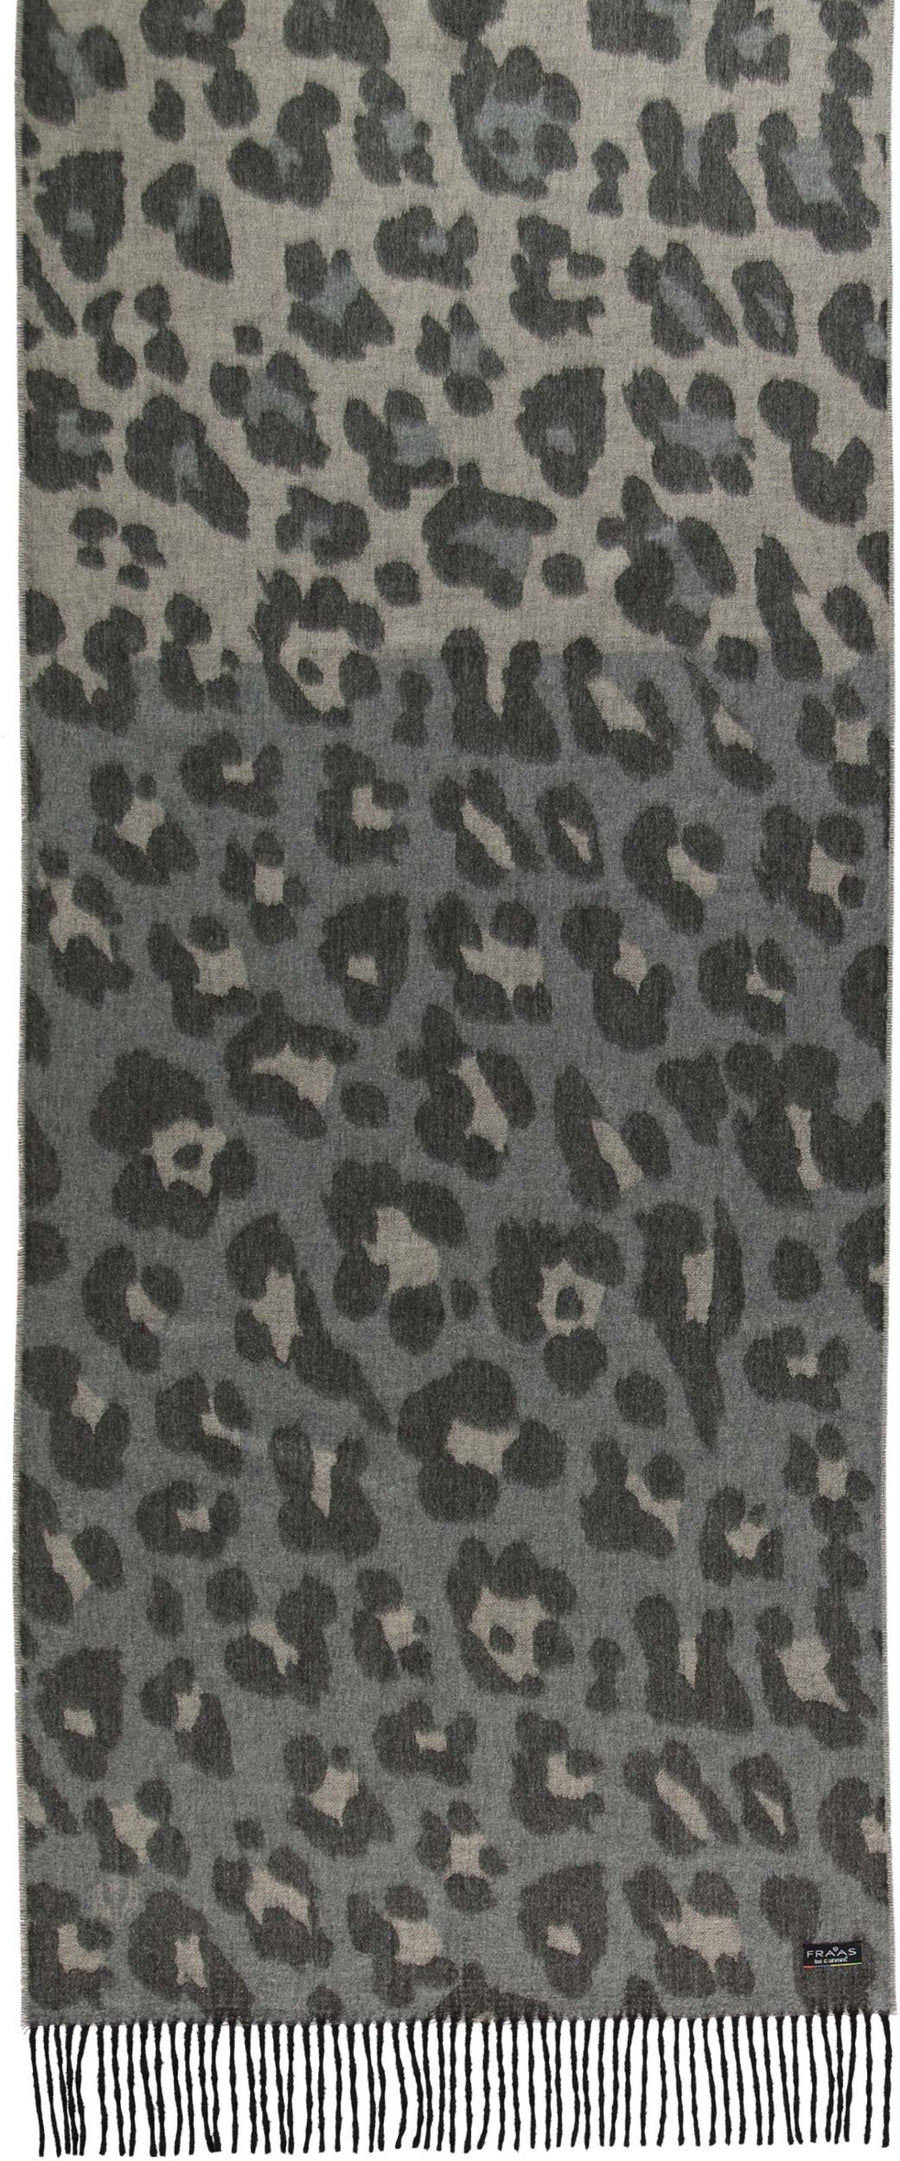 Fraas 625281 170 Sand Light Grey Tonal Animal Print Cashmink Wrap